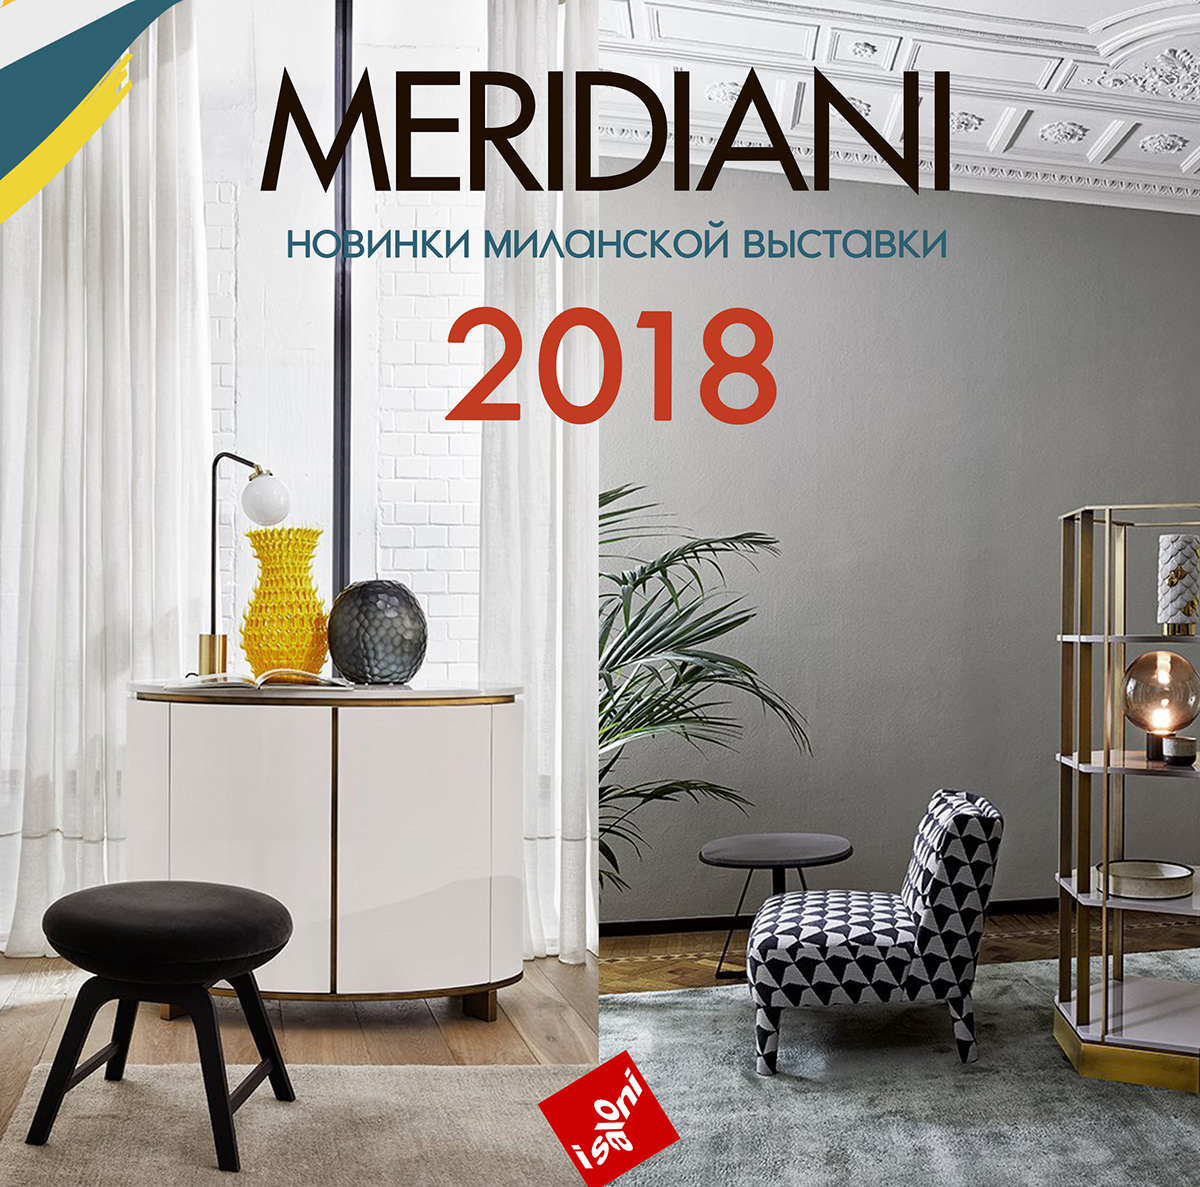 kartell MOOOI galotti&radice chelini Meridiani smania Gervasoni mhliving Furinture  advertising banner